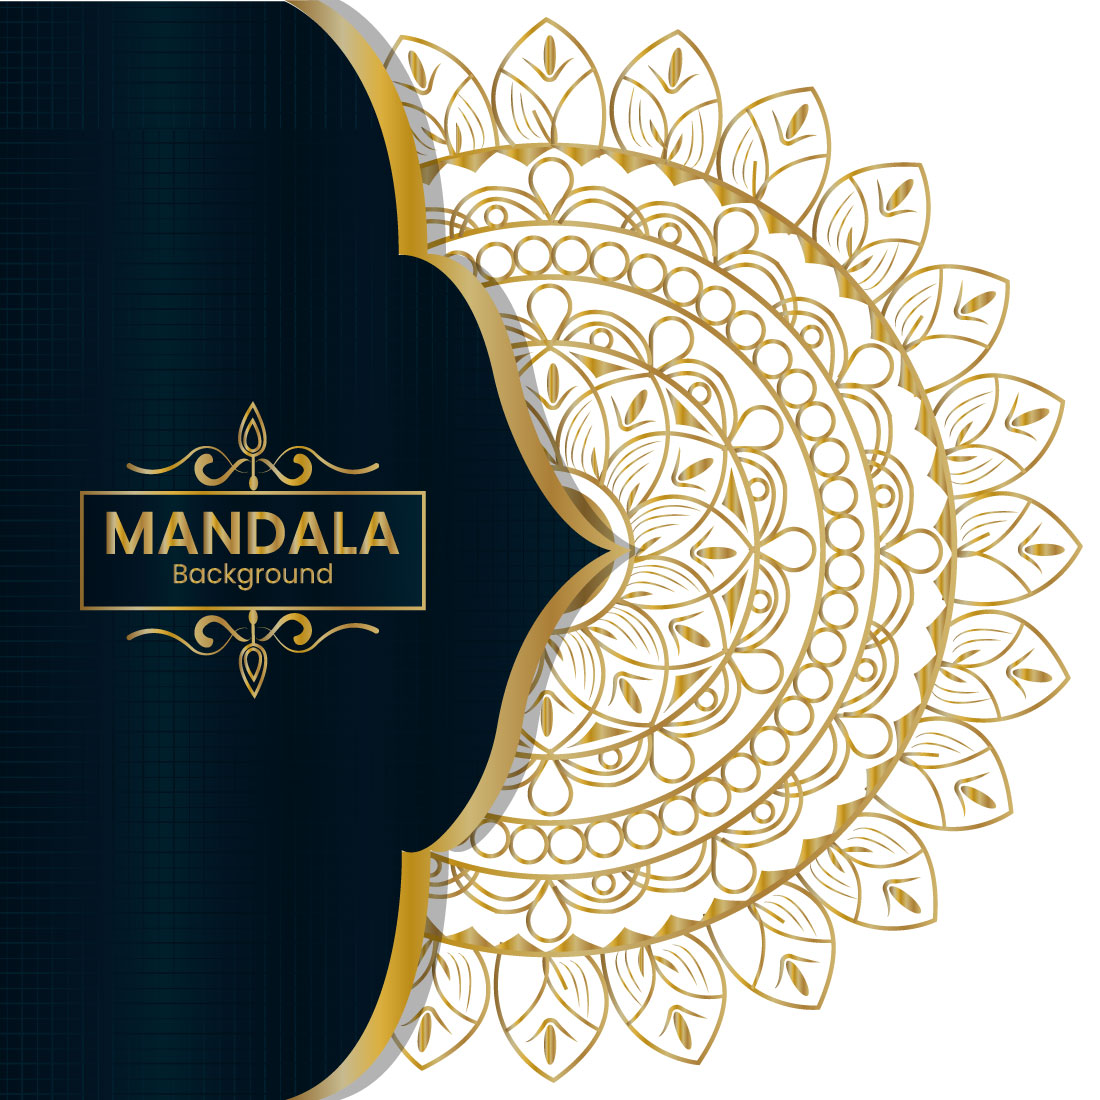 Modern Luxury Mandala Background design cover image.